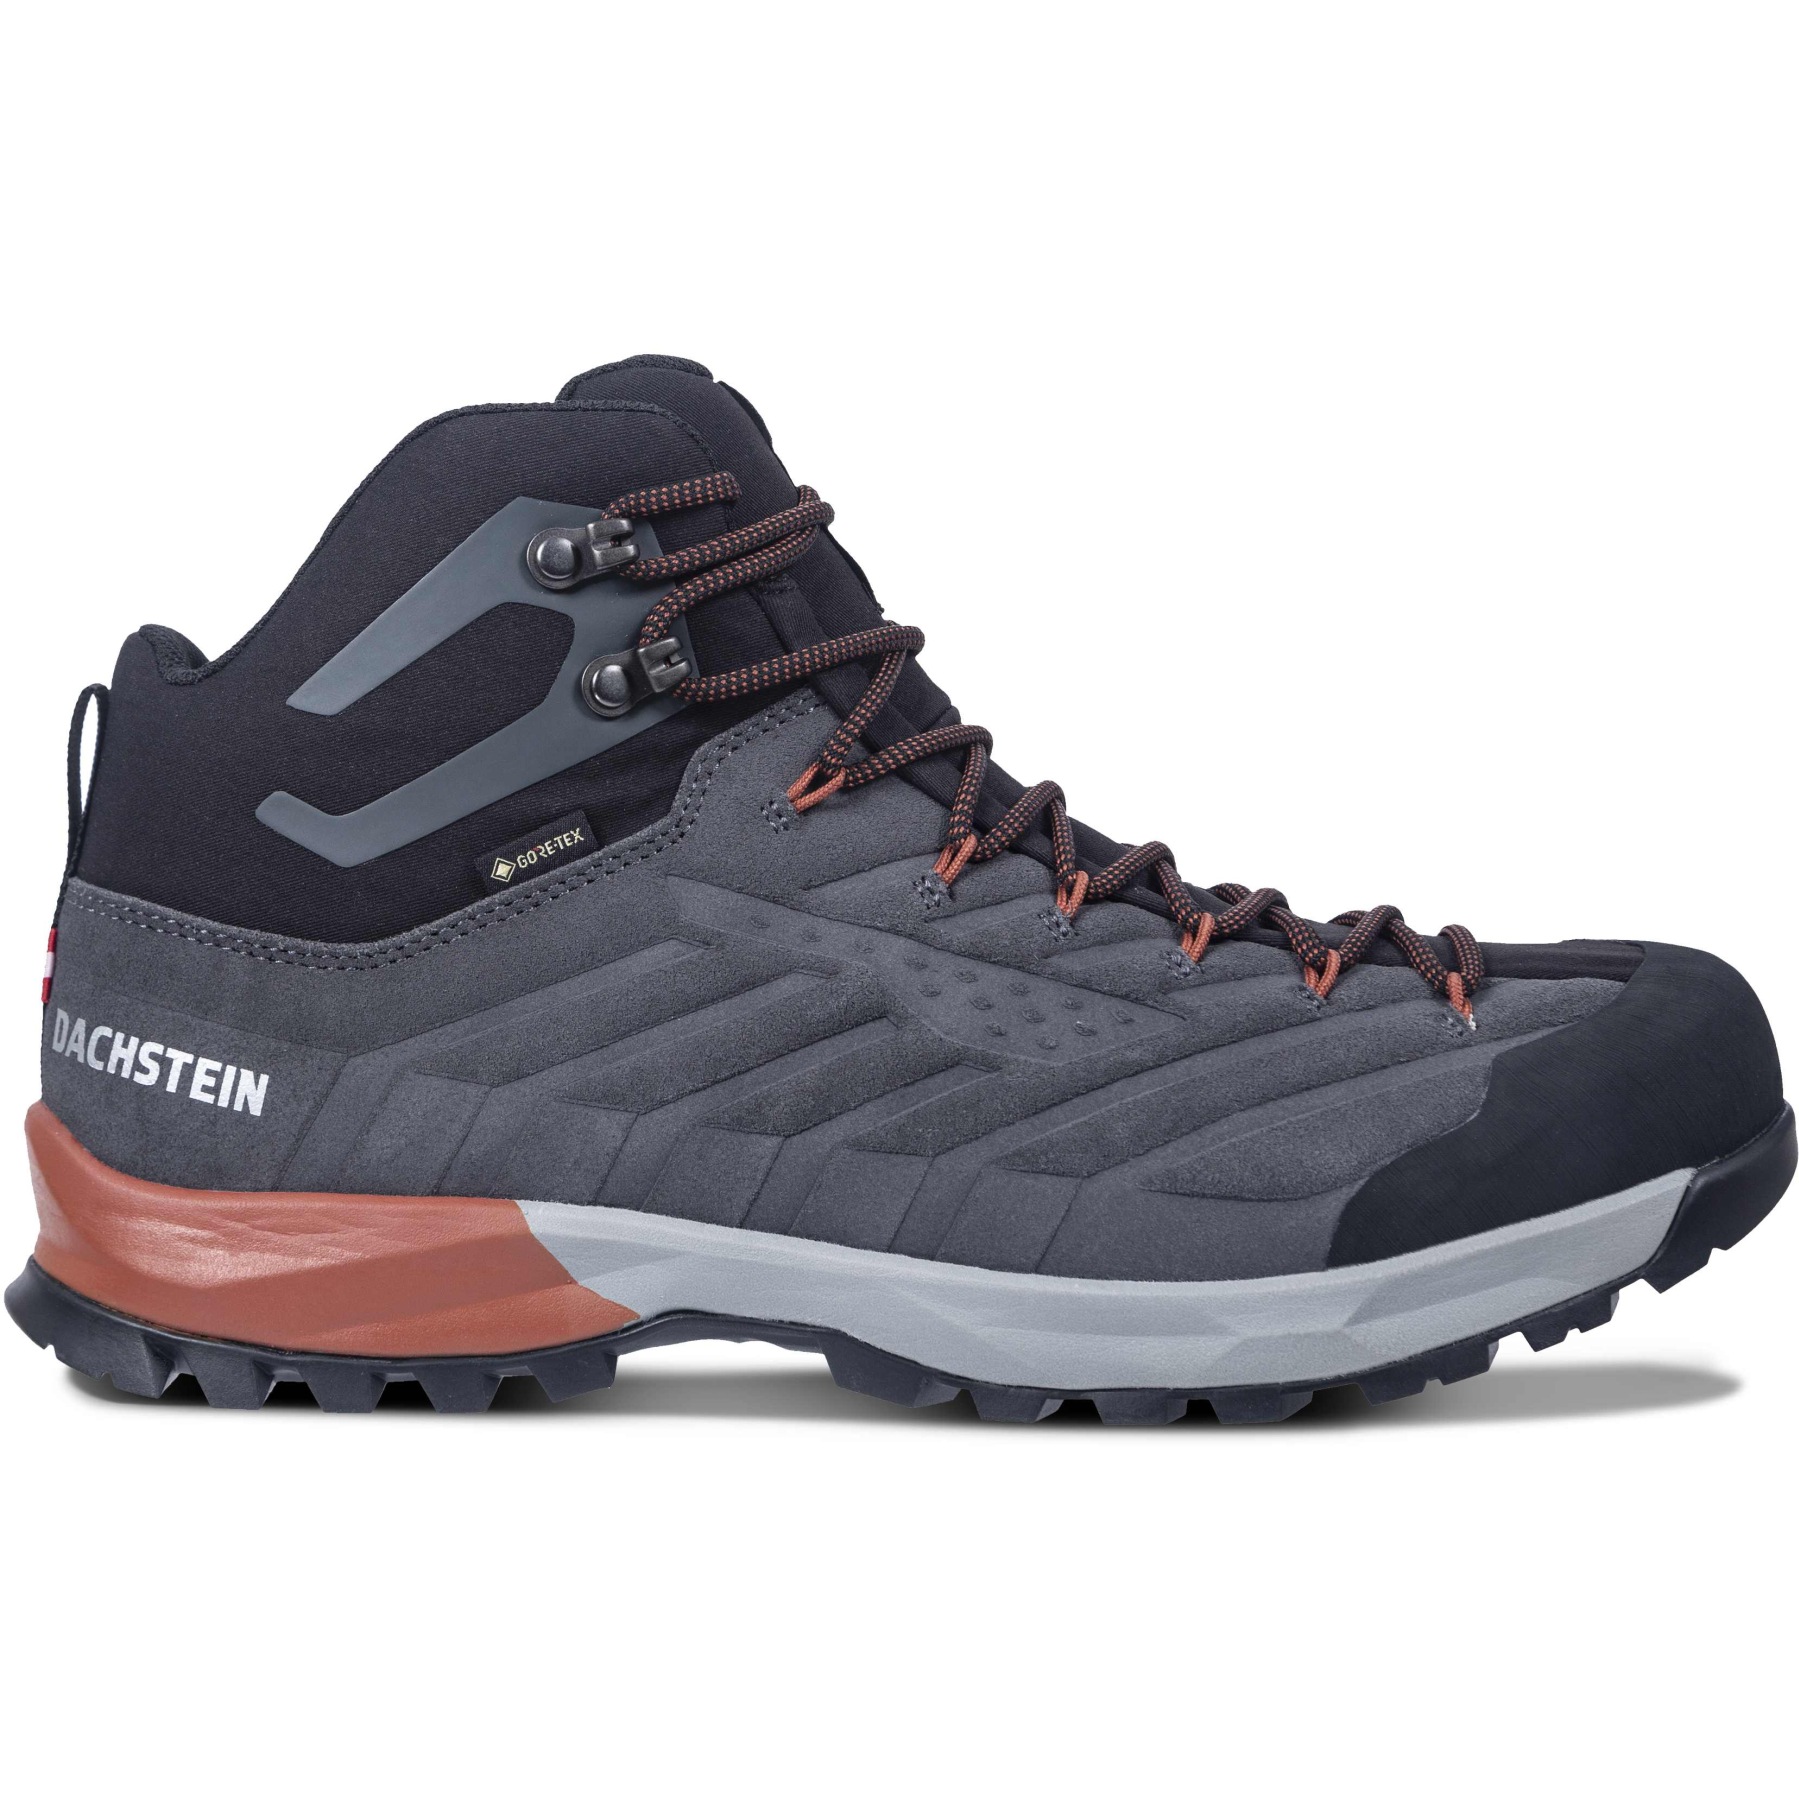 Image de Dachstein SF-21 MC GTX Chaussures Homme Outdoor - granite